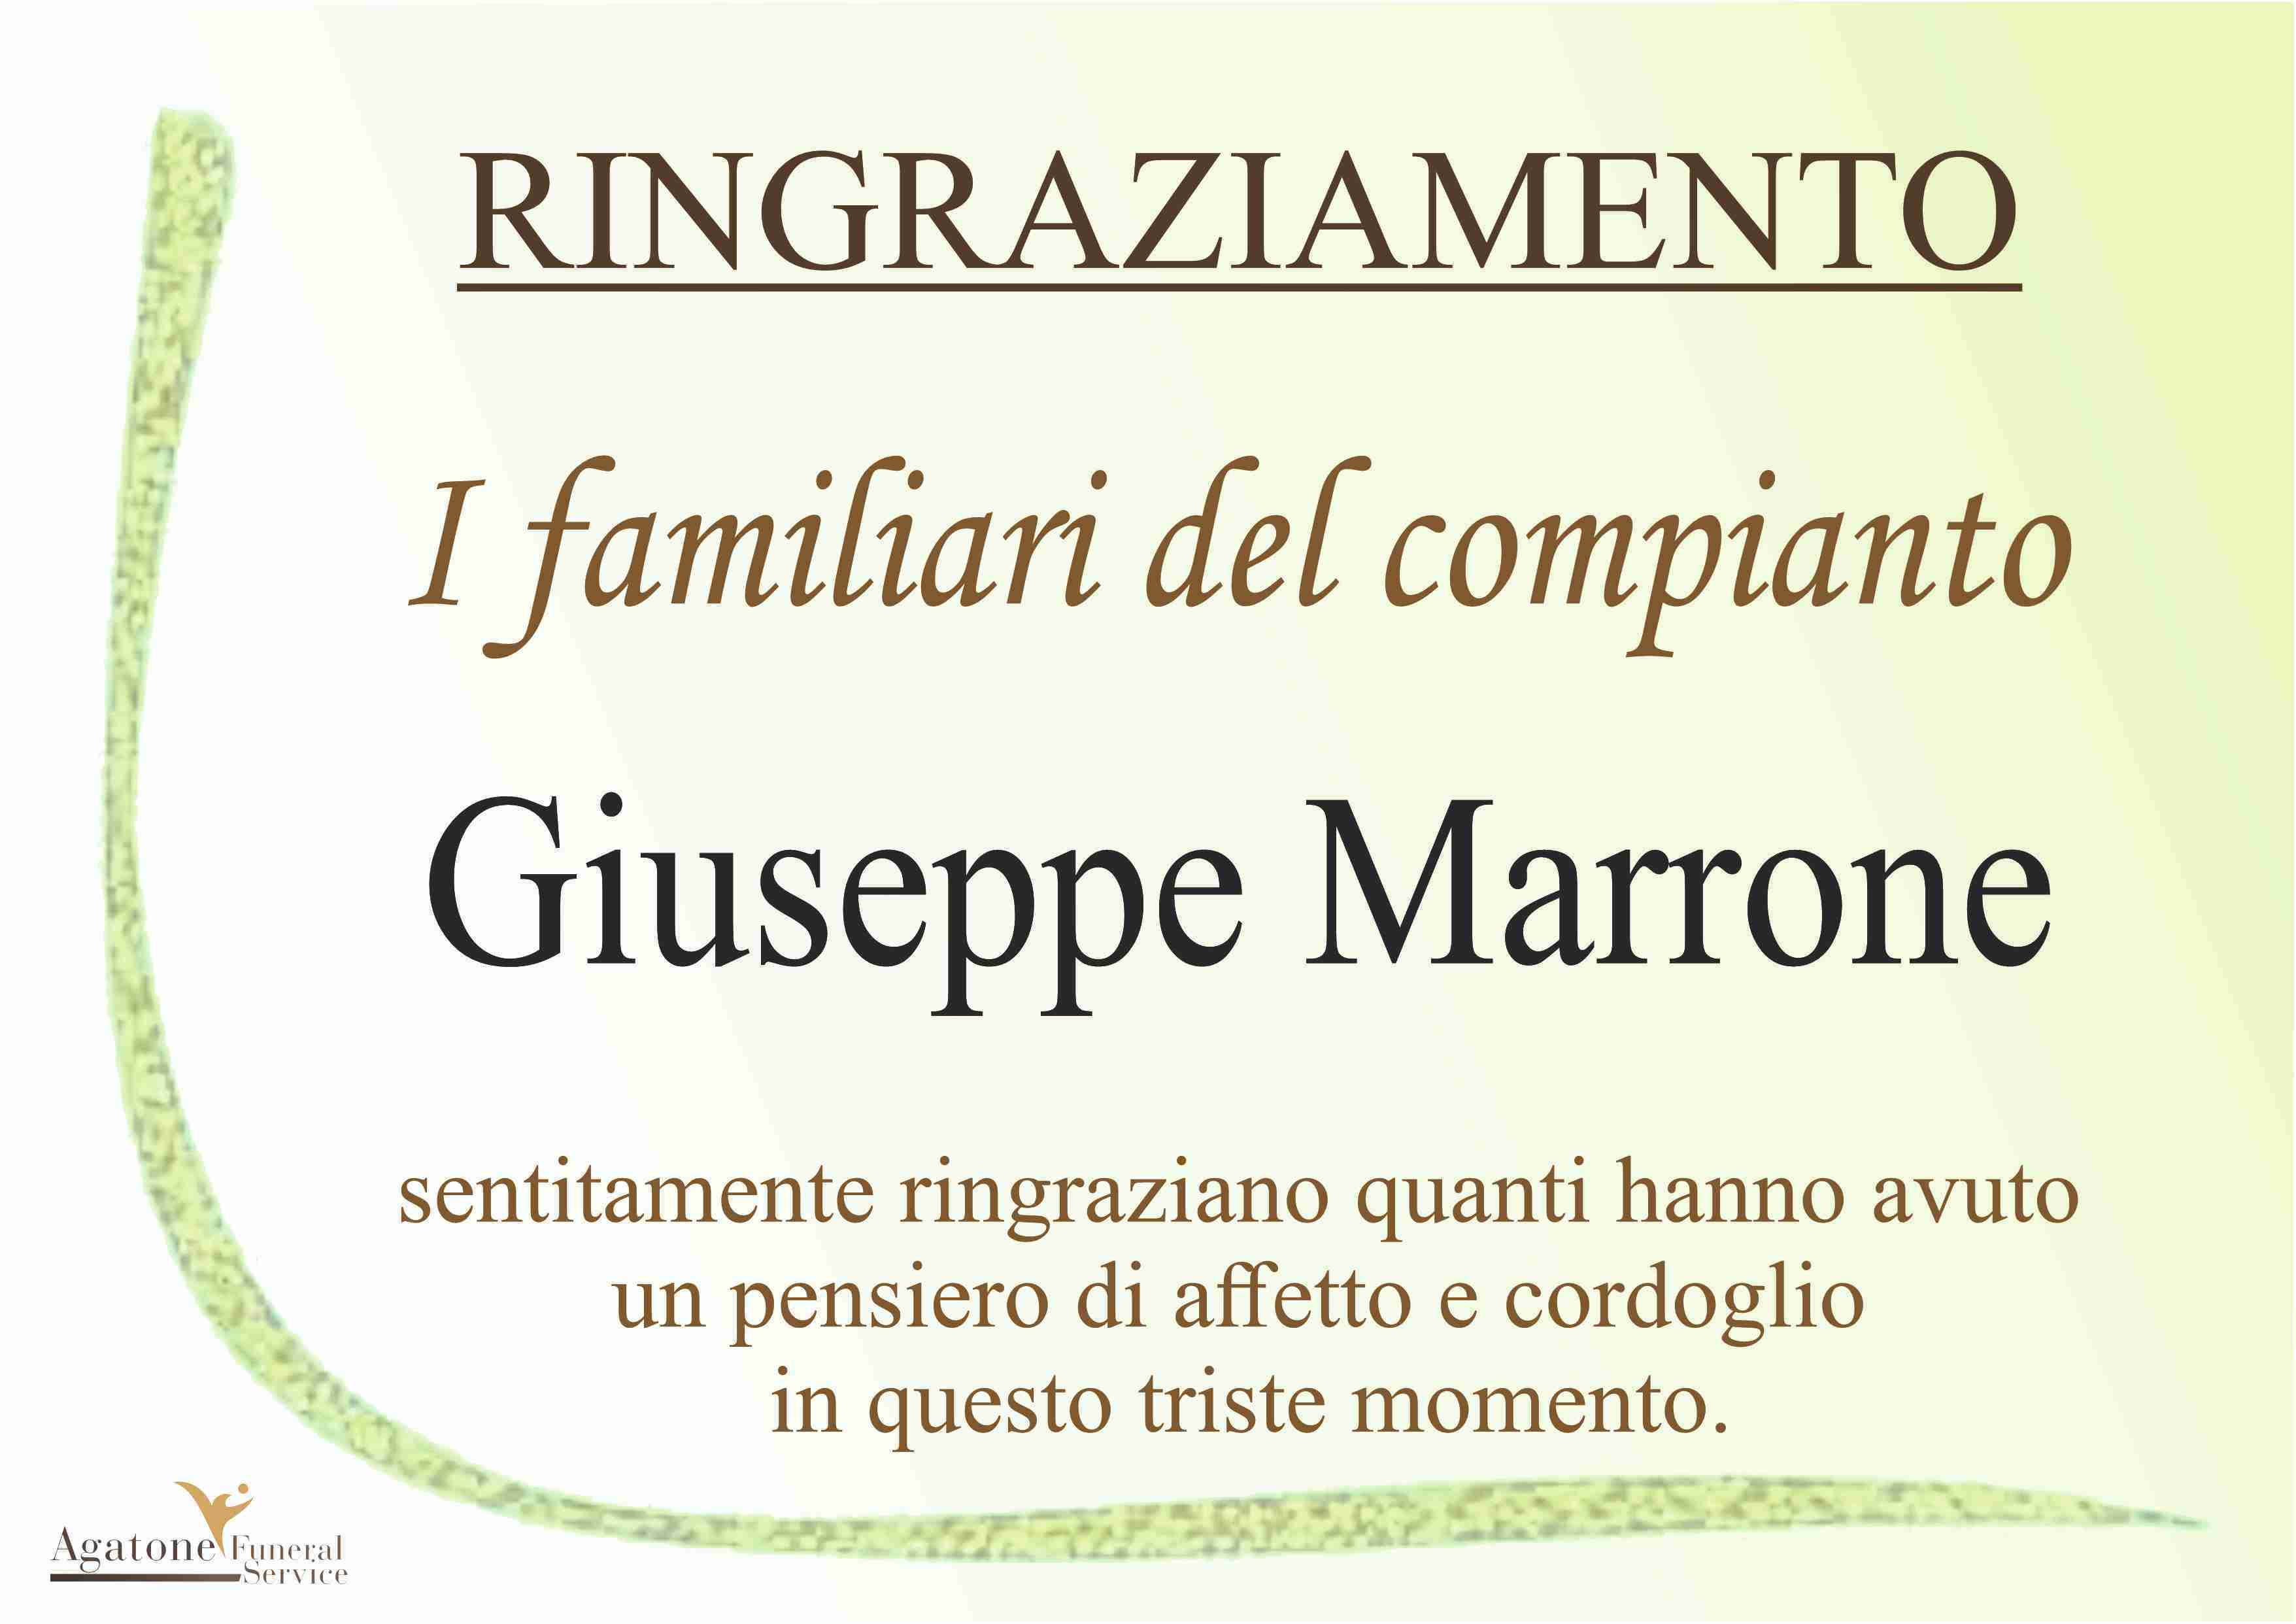 Giuseppe Marrone